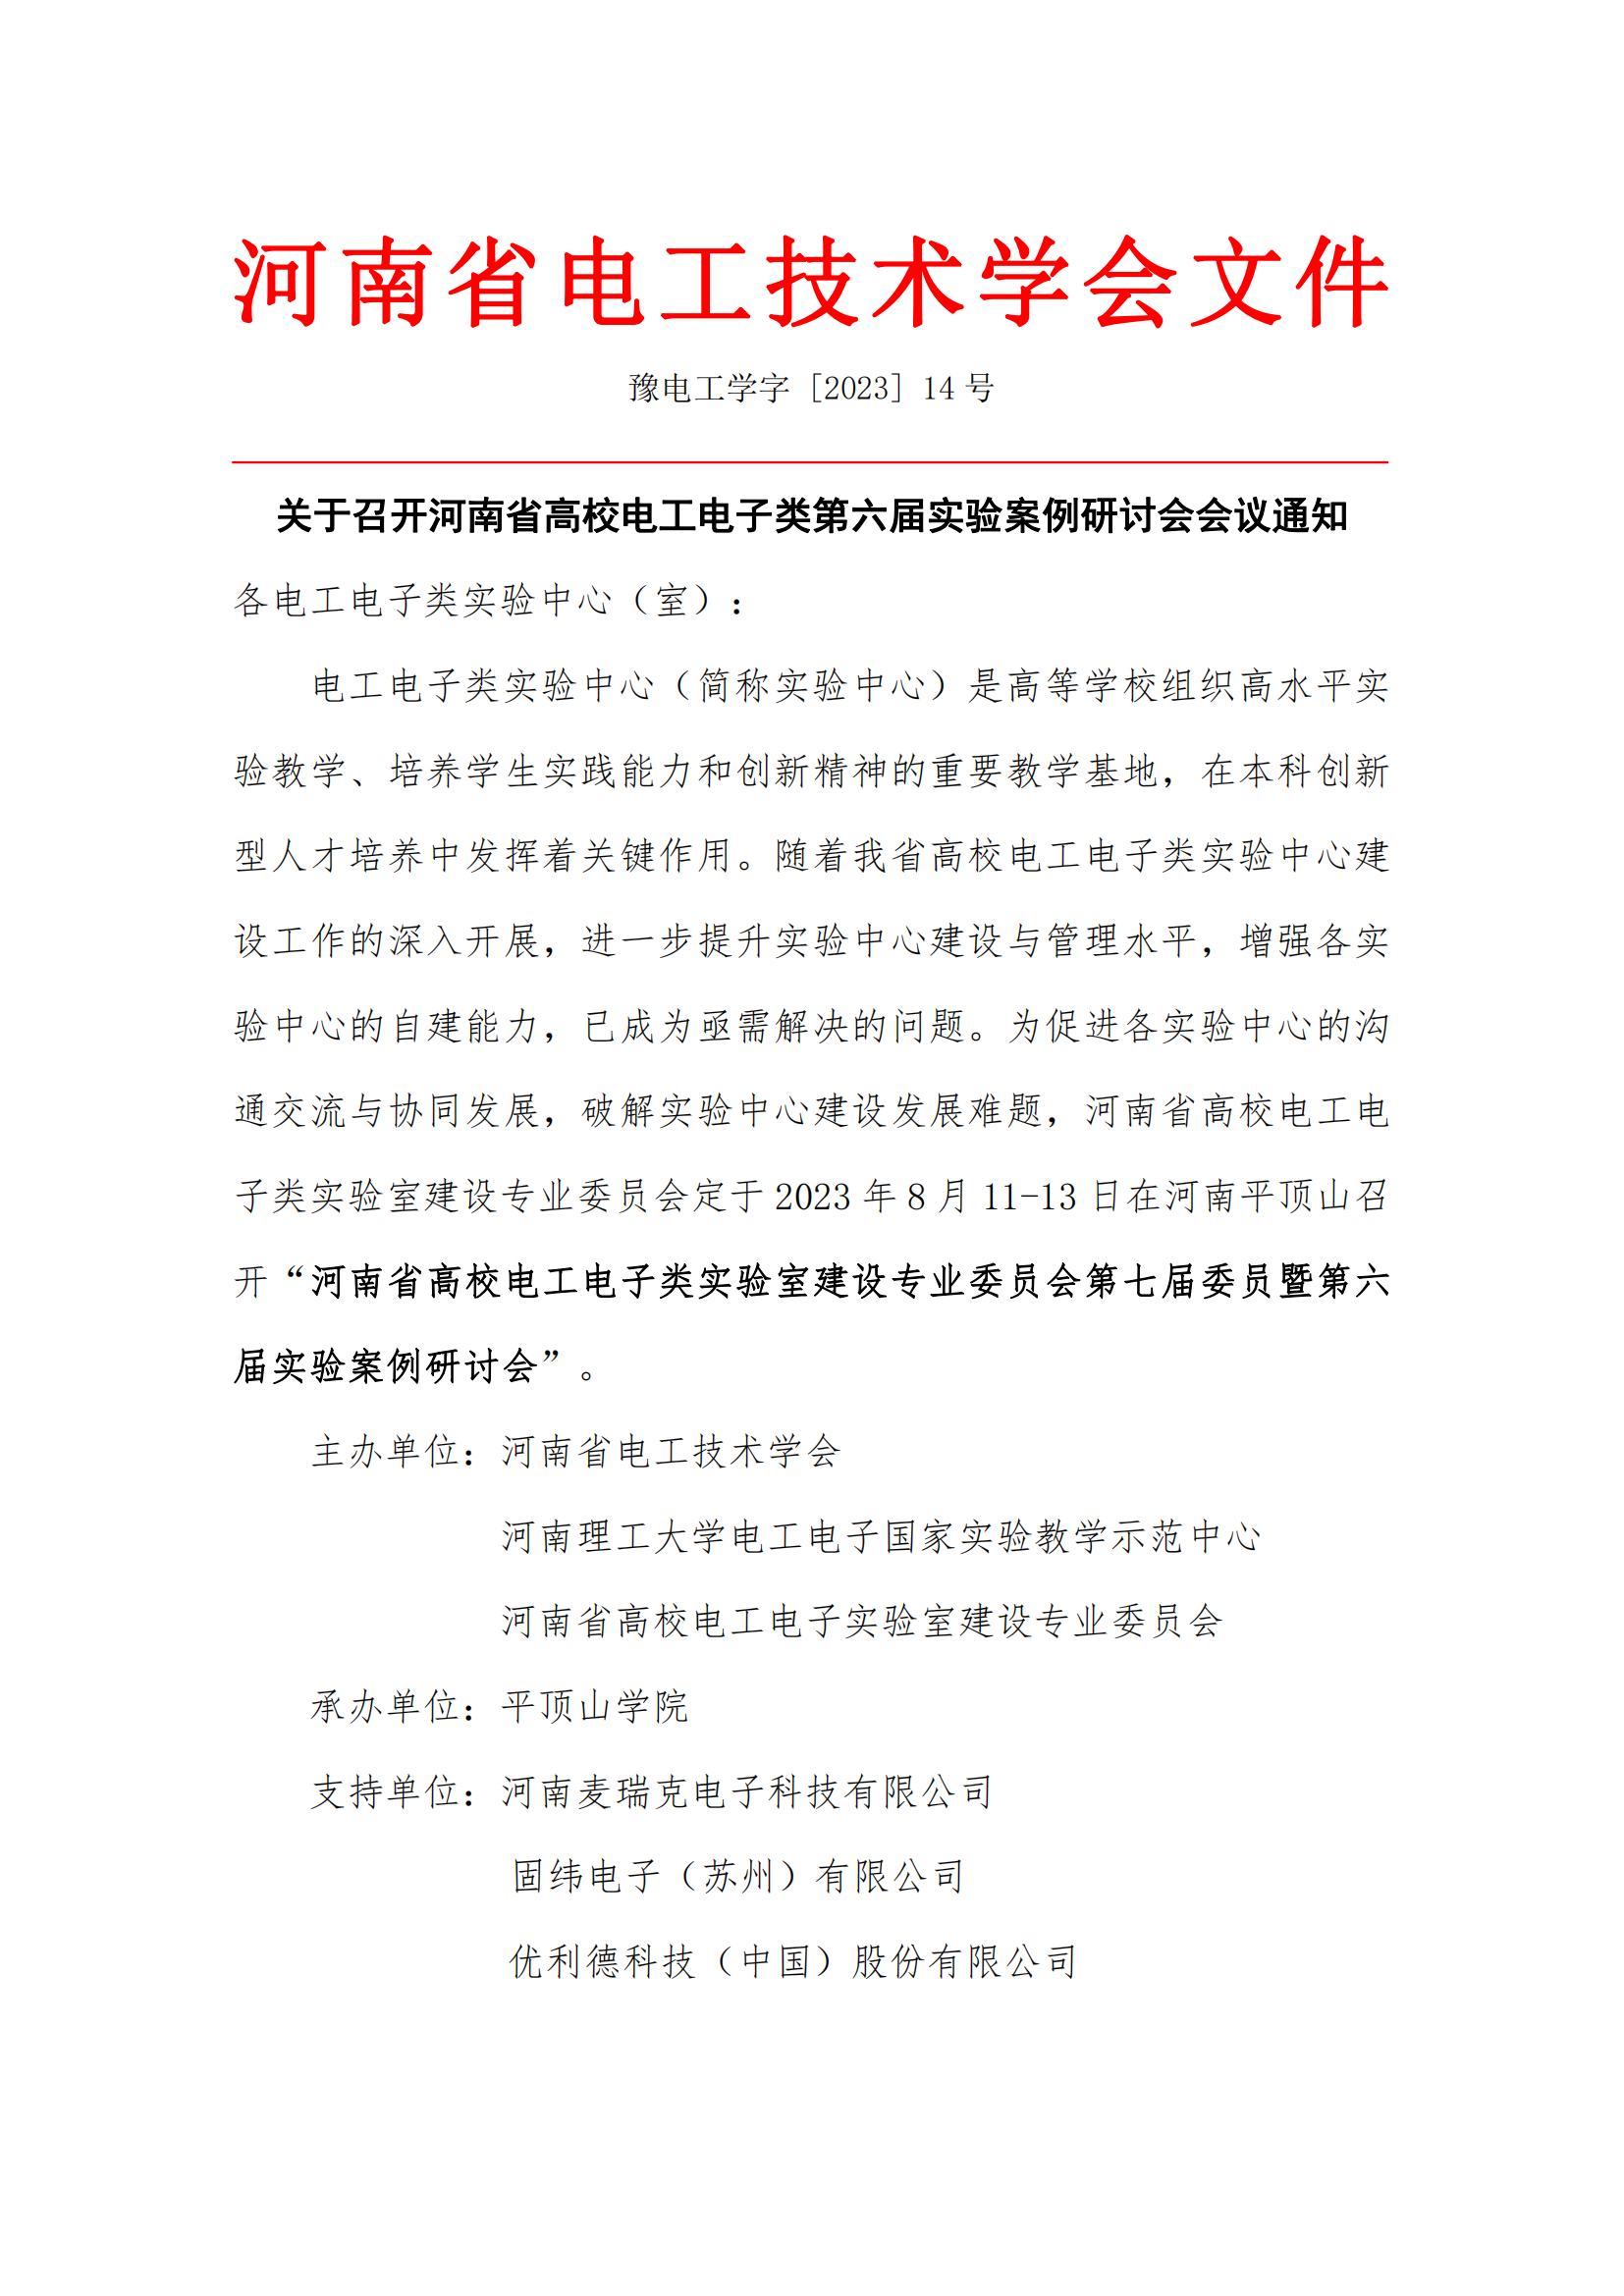 关于召开河南省高校电工电子类第六届实验案例研讨会会议通知_00.png